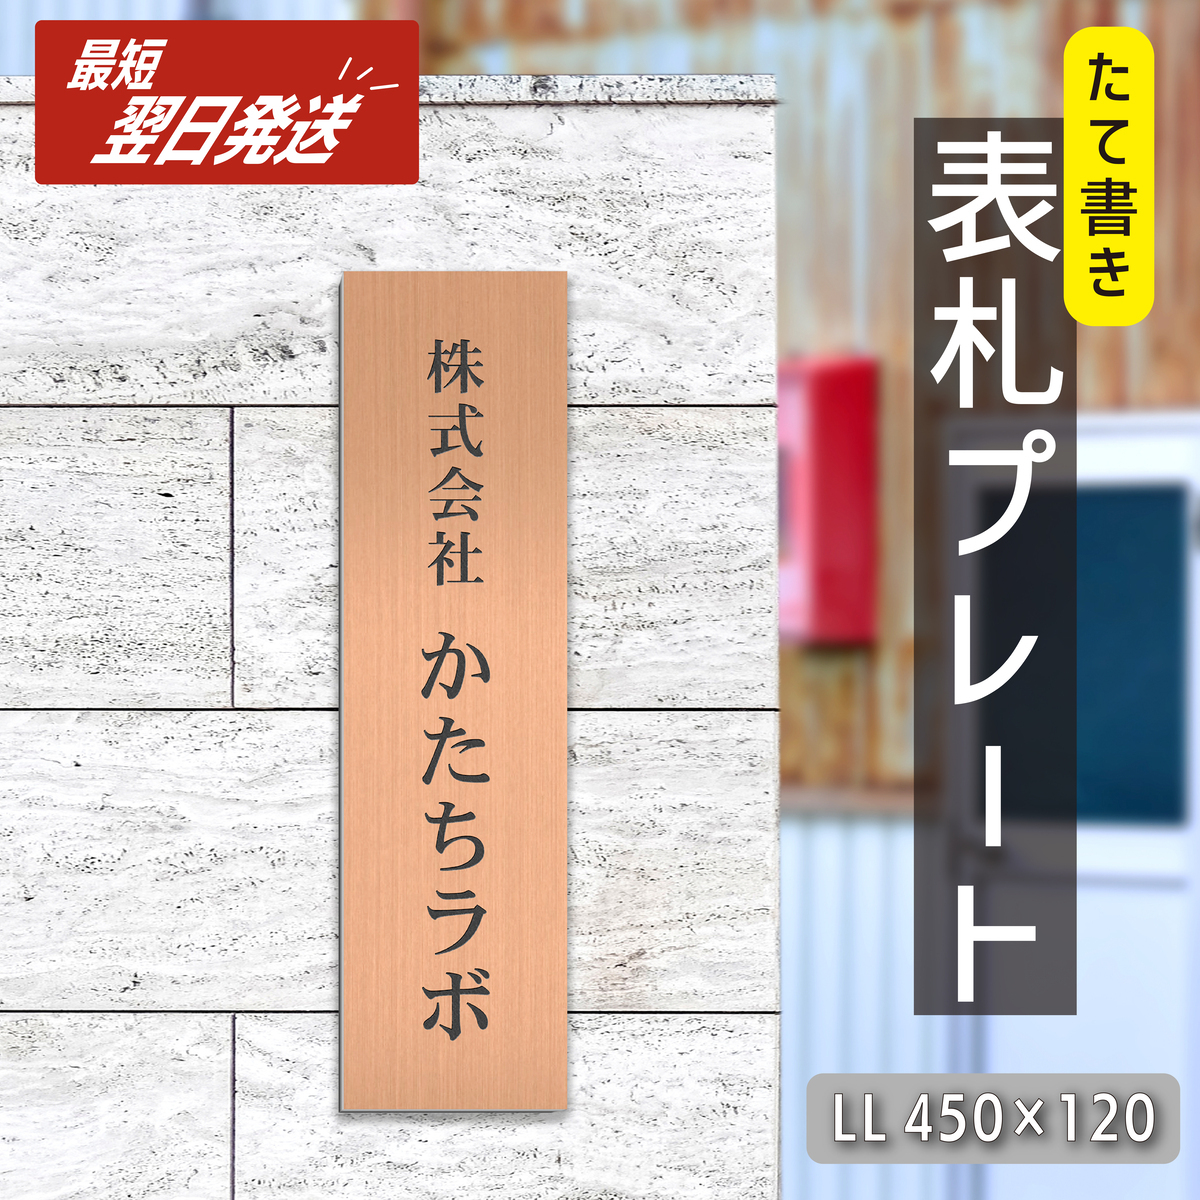 日本製2層アクリル板で作った縦型のオフィス、会社表札